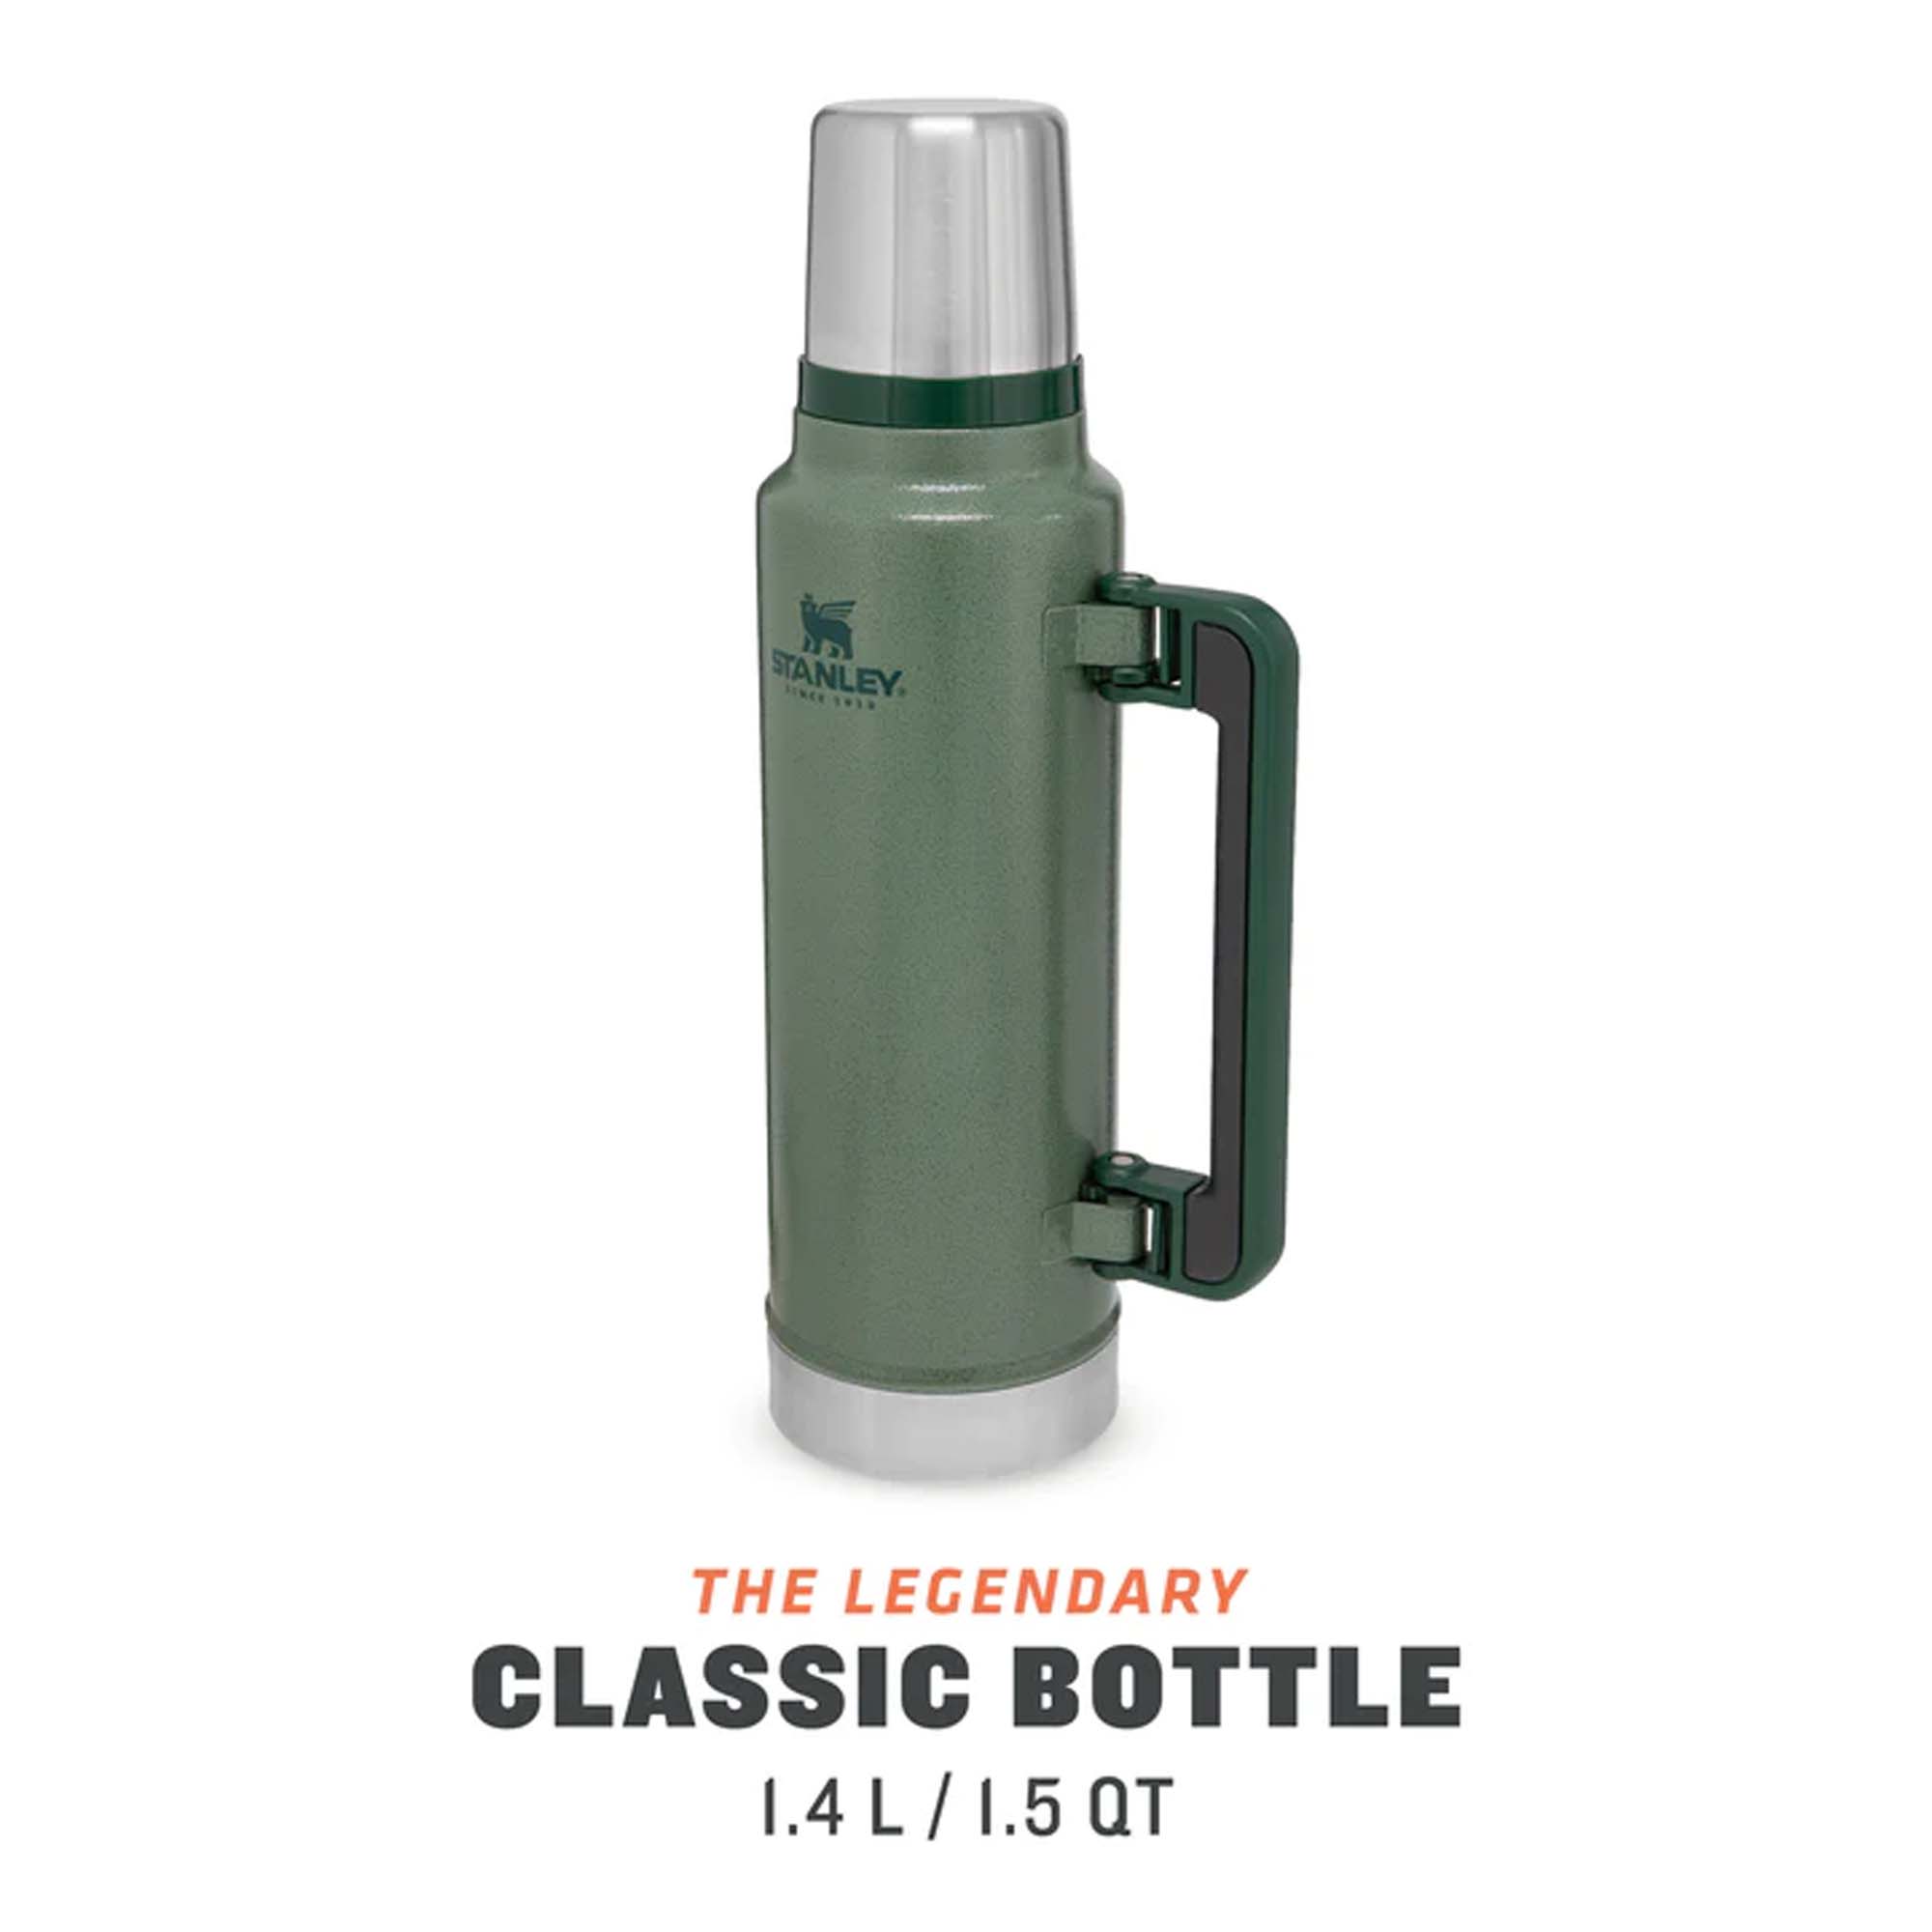 STANLEY The Legendary Classic Bottle 1.4L / 1.5QT